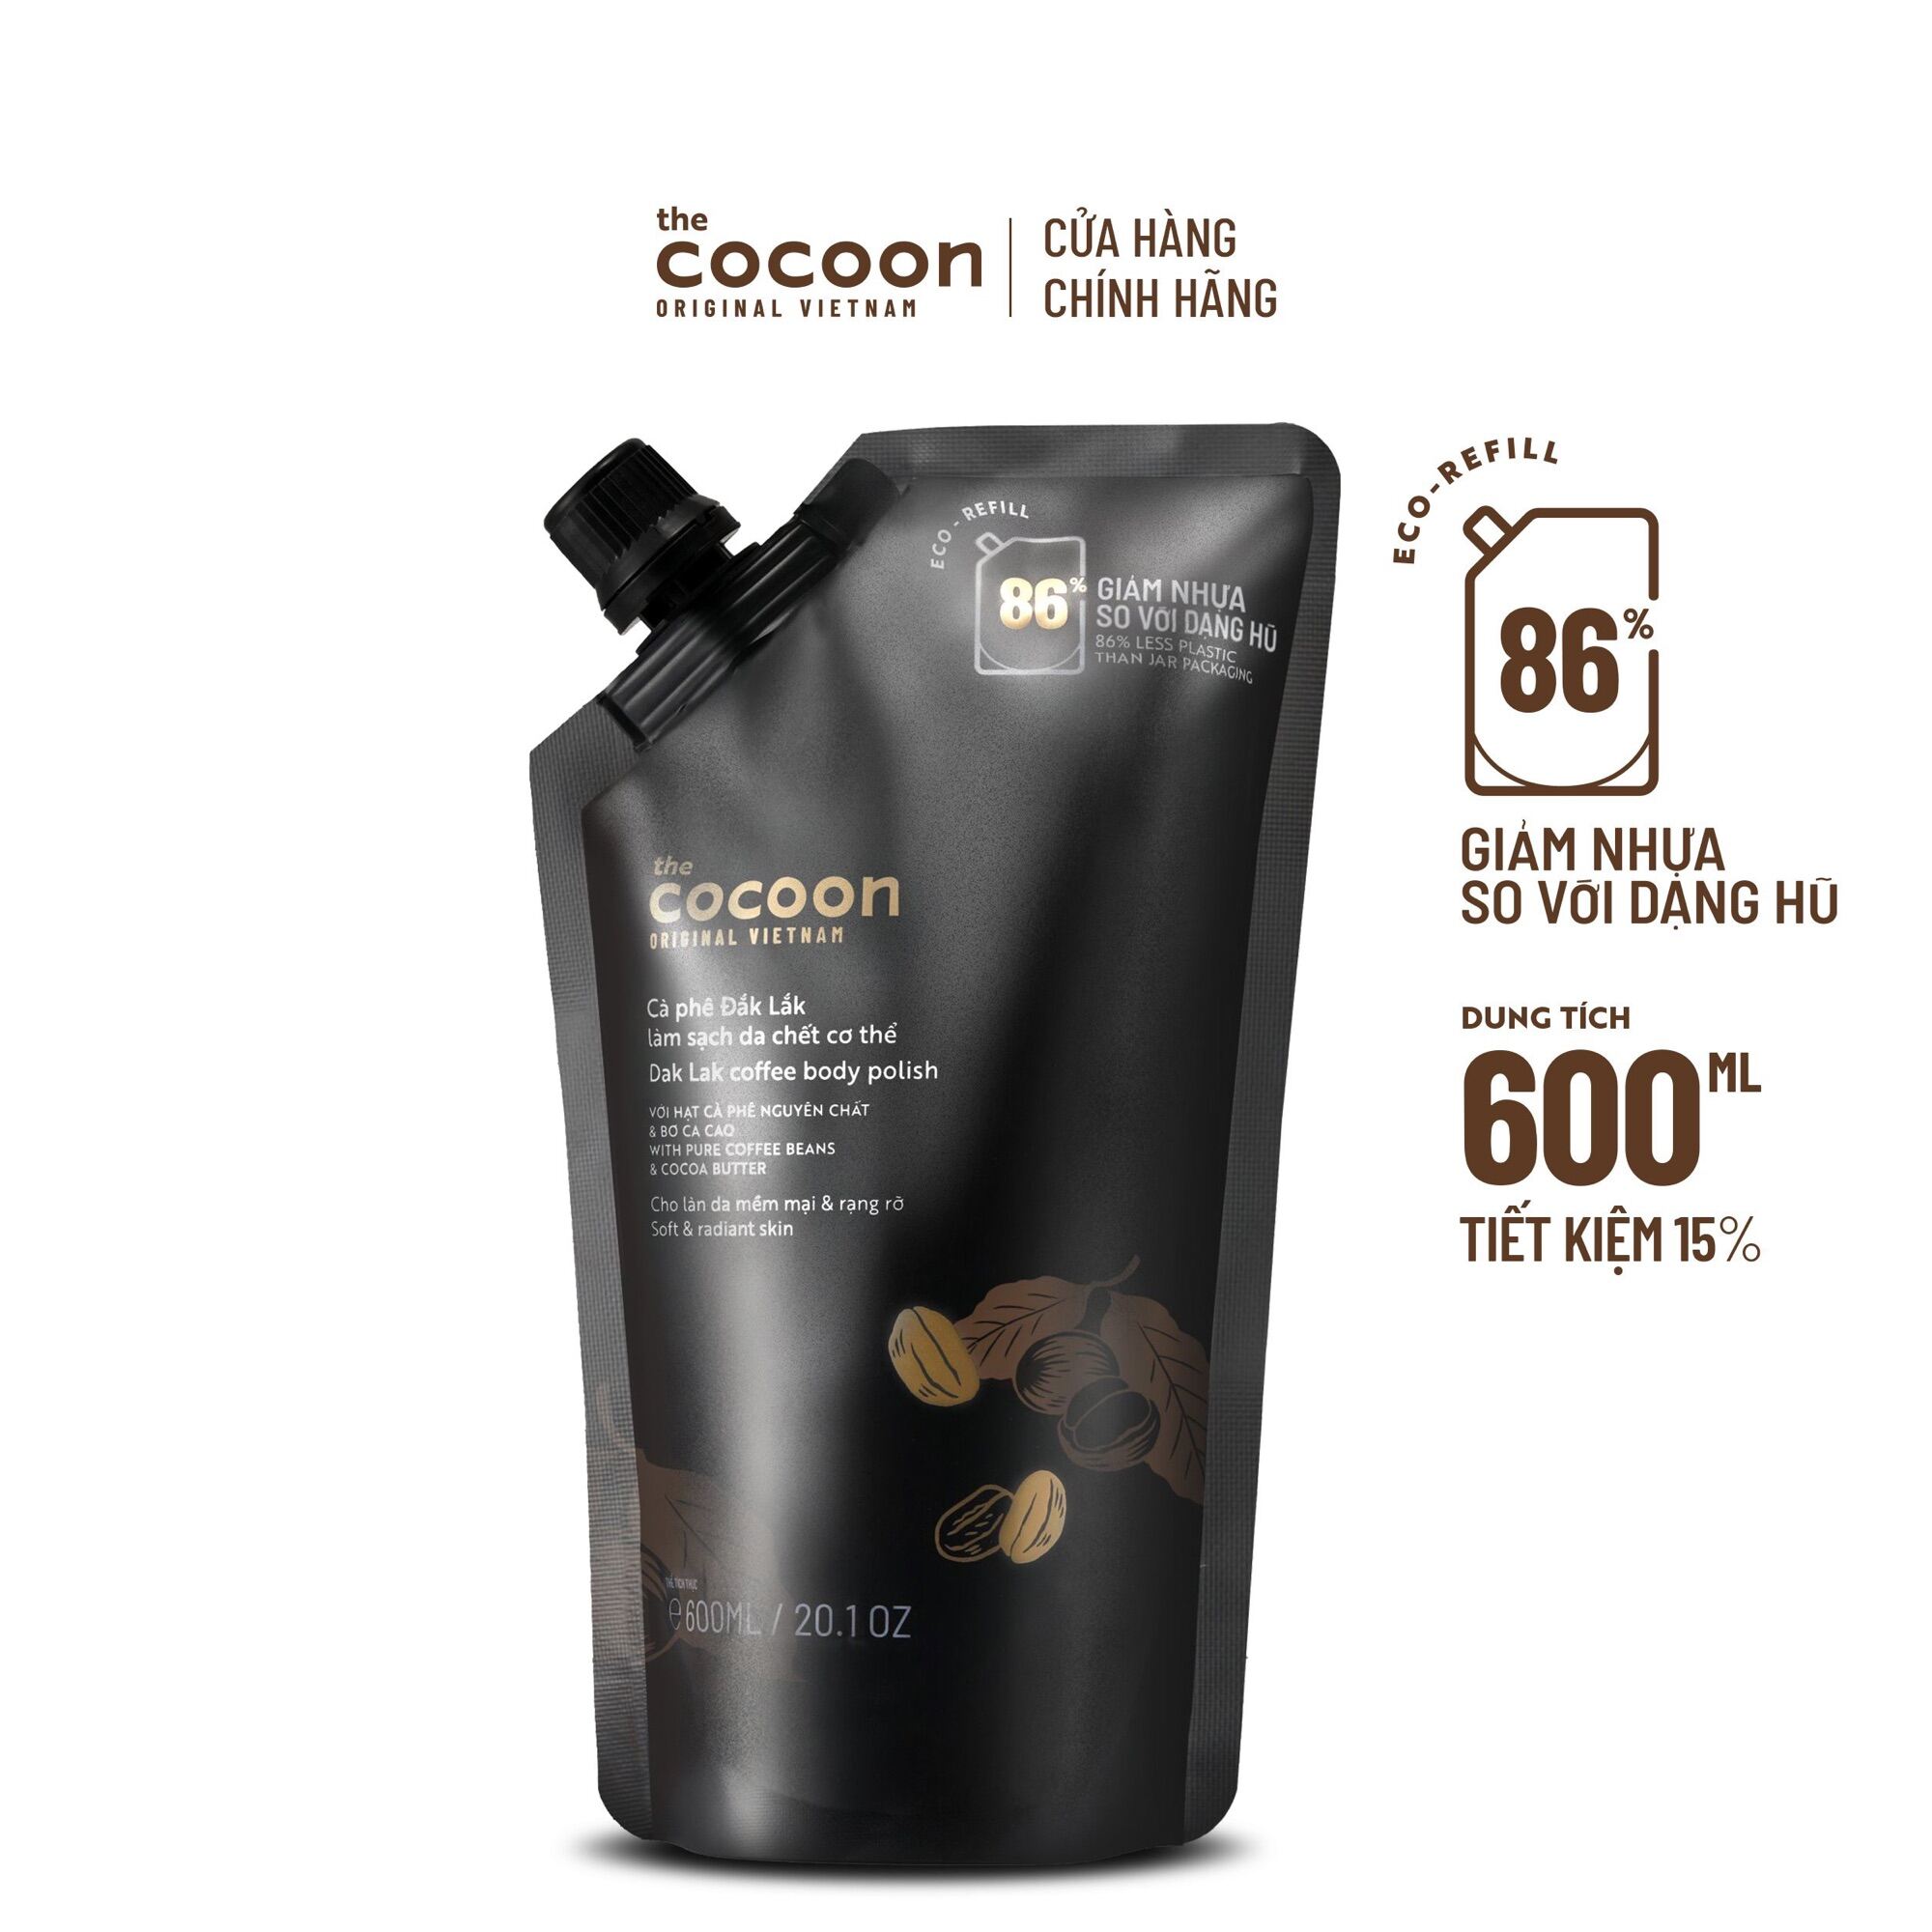 Túi Refill Cà phê Đắk Lắk làm sạch da chết cơ thể Cocoon cho làn da mềm mại & rạng rỡ 600ml thumbnail